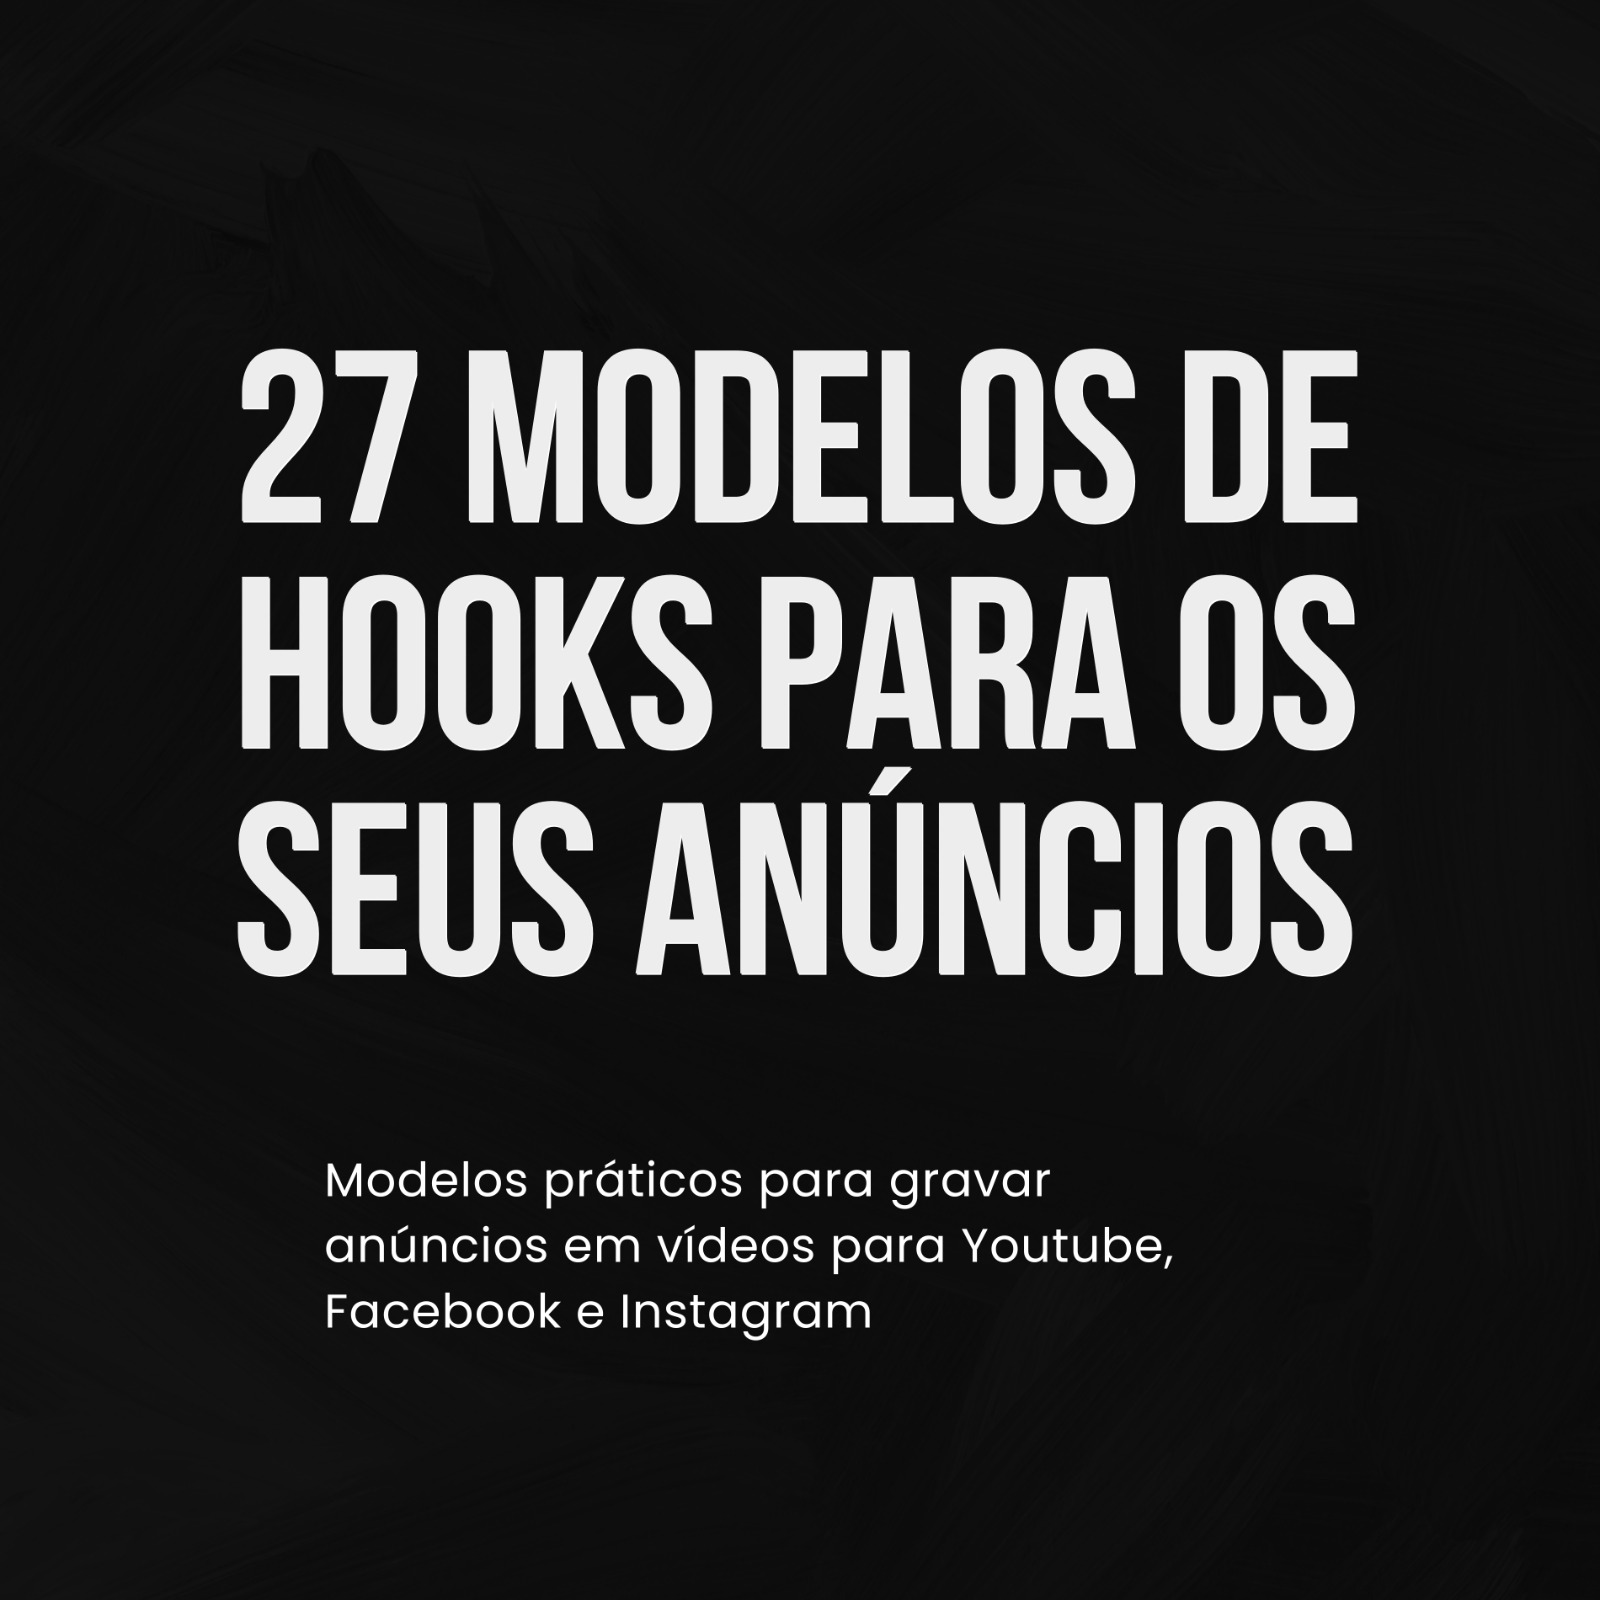 27 Modelos de Hook Para os Seus Anúncios 167